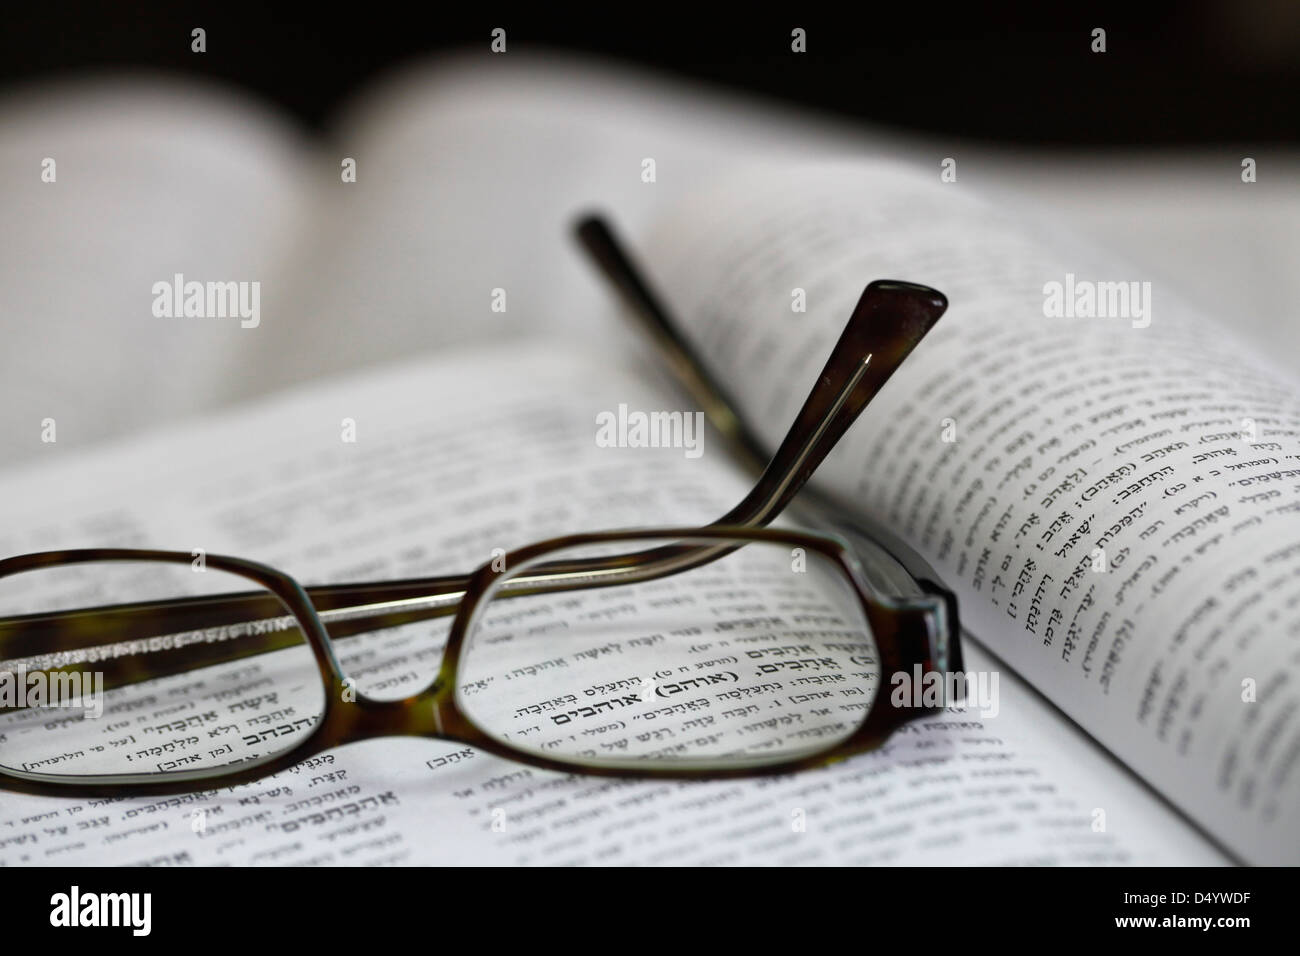 Un dictionnaire hébreu s'ouvrir à la parole de 'love', vu à travers des lunettes Banque D'Images